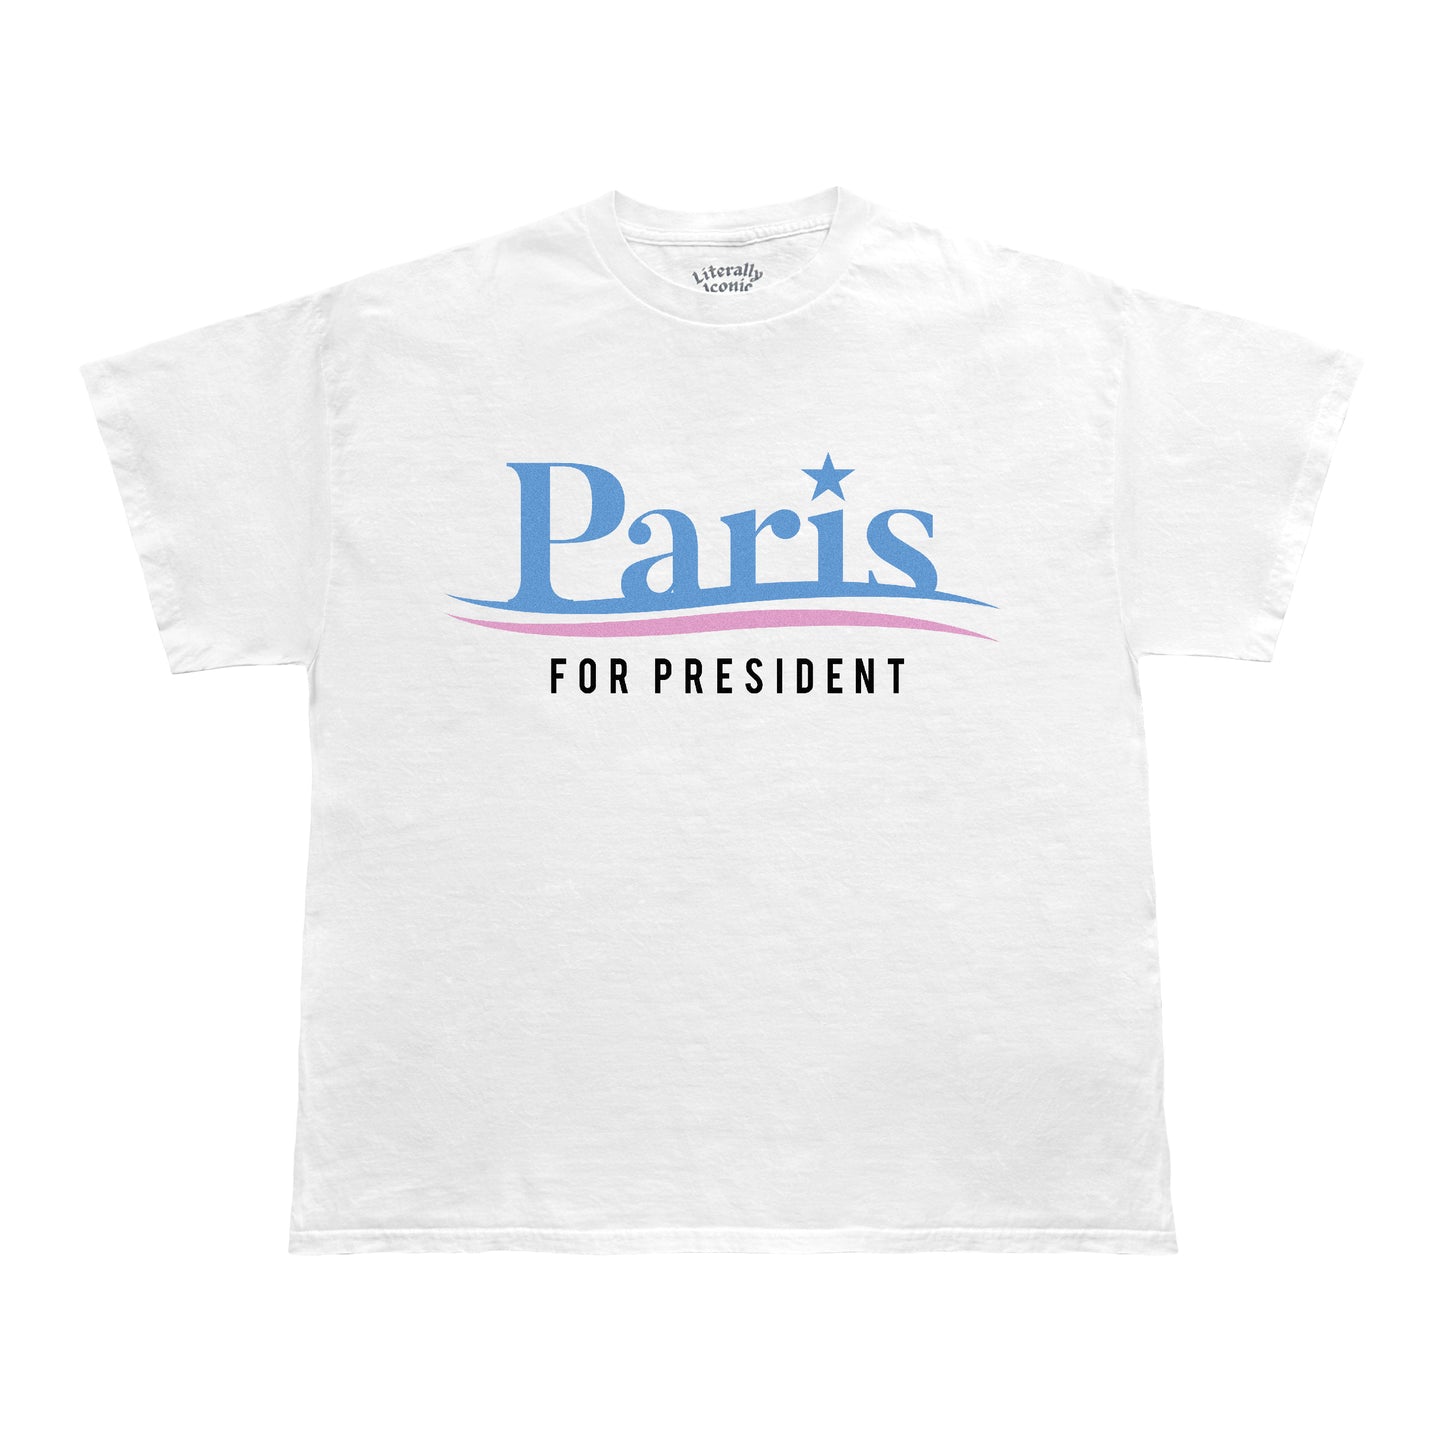 Paris For President